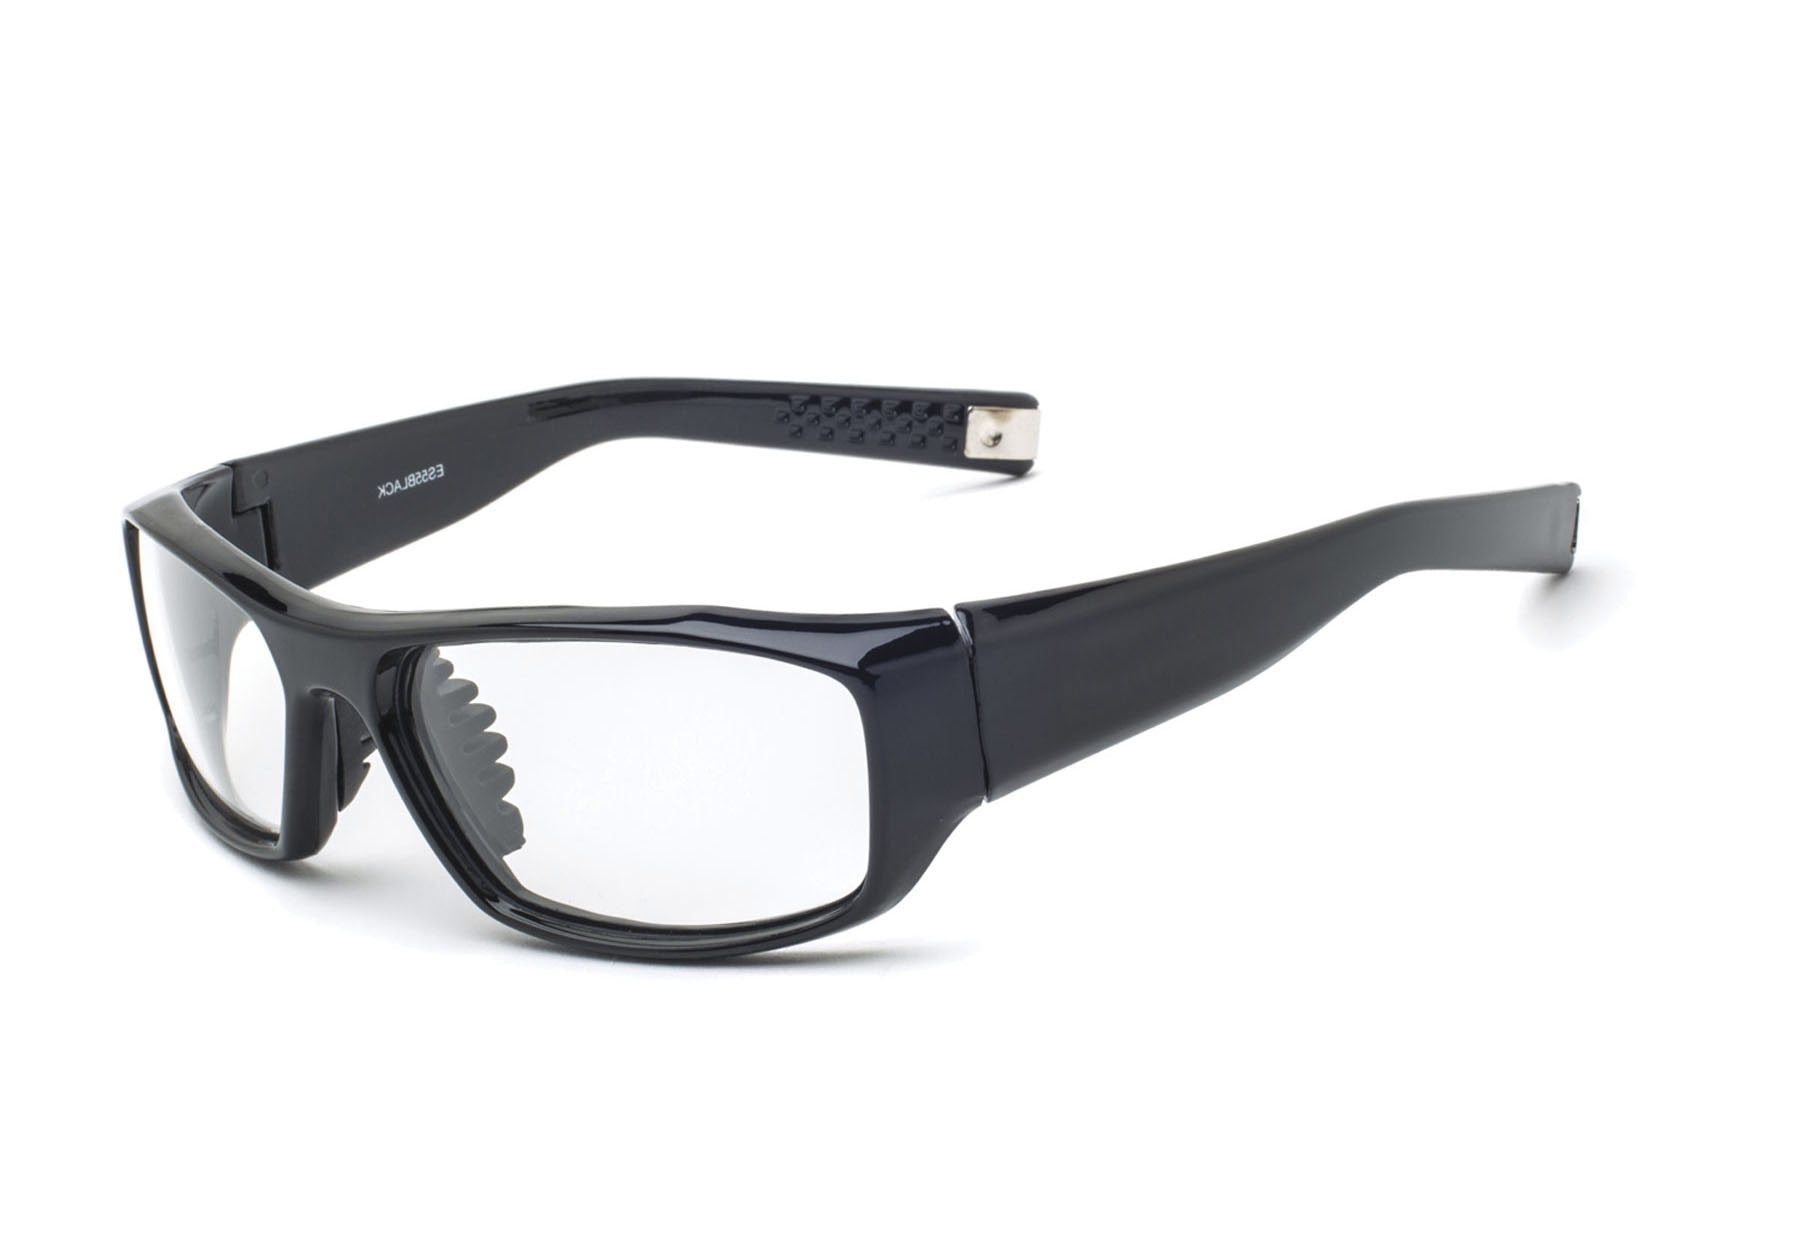 VS Eyewear Radiation safety glasses - VS Eyewear